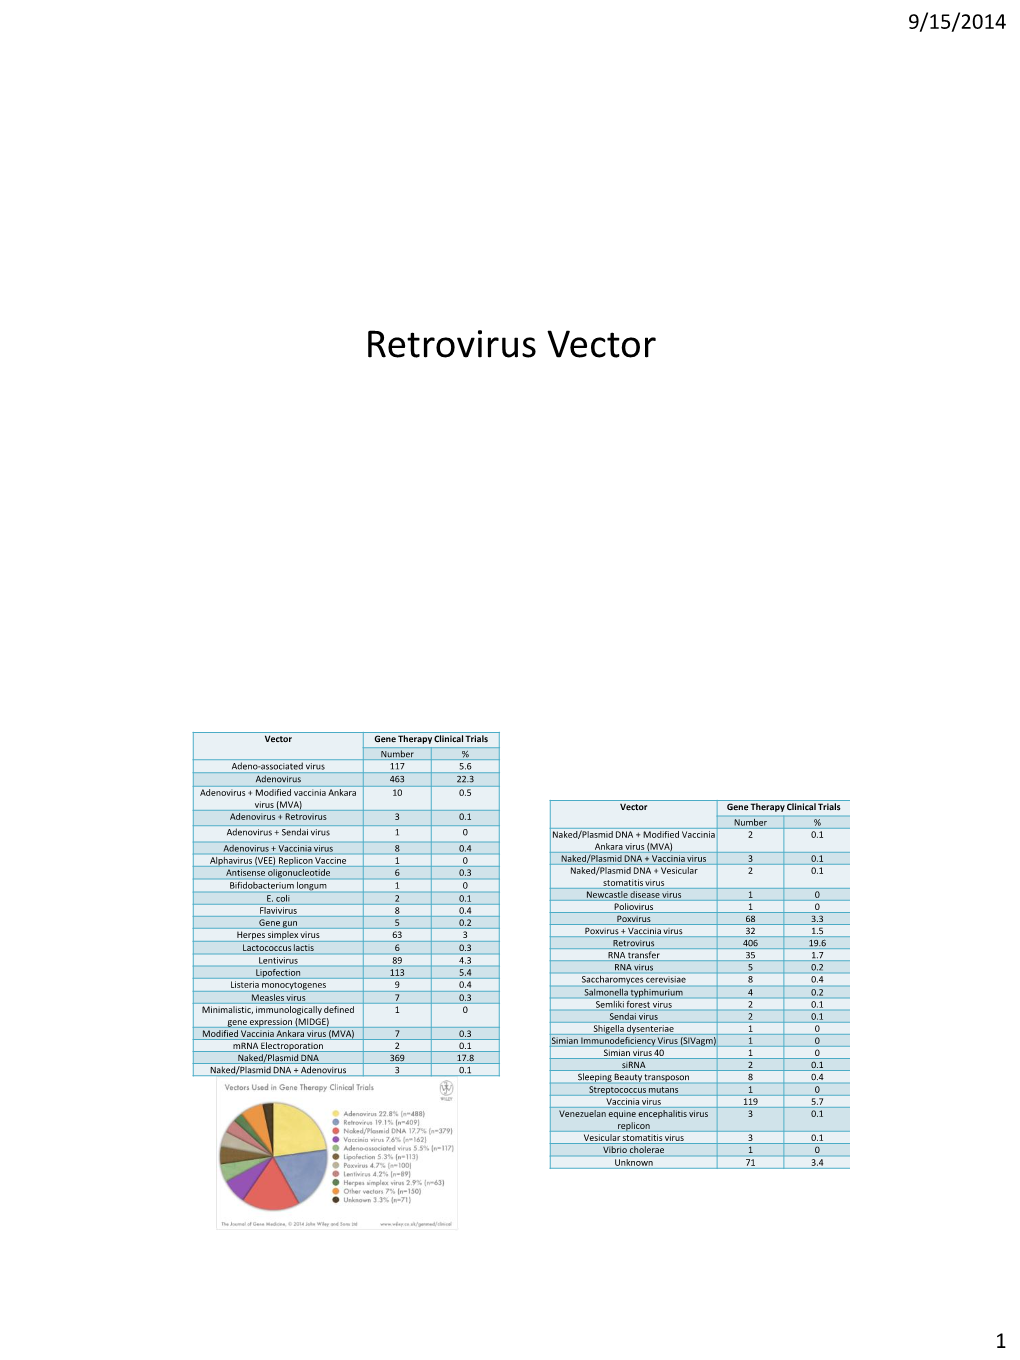 Vektor Retrovirus